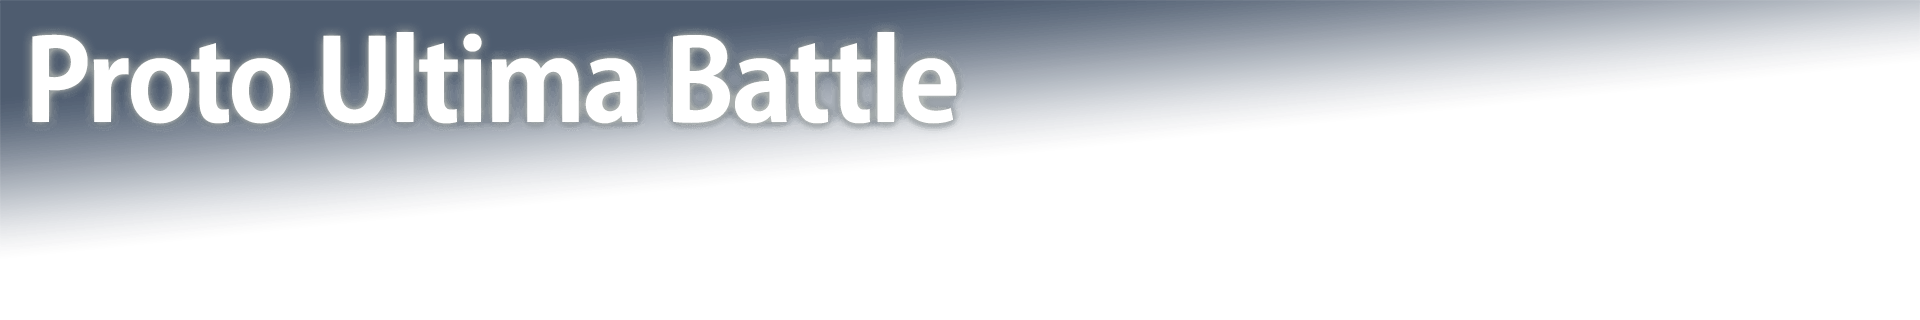 Proto Ultima Battle